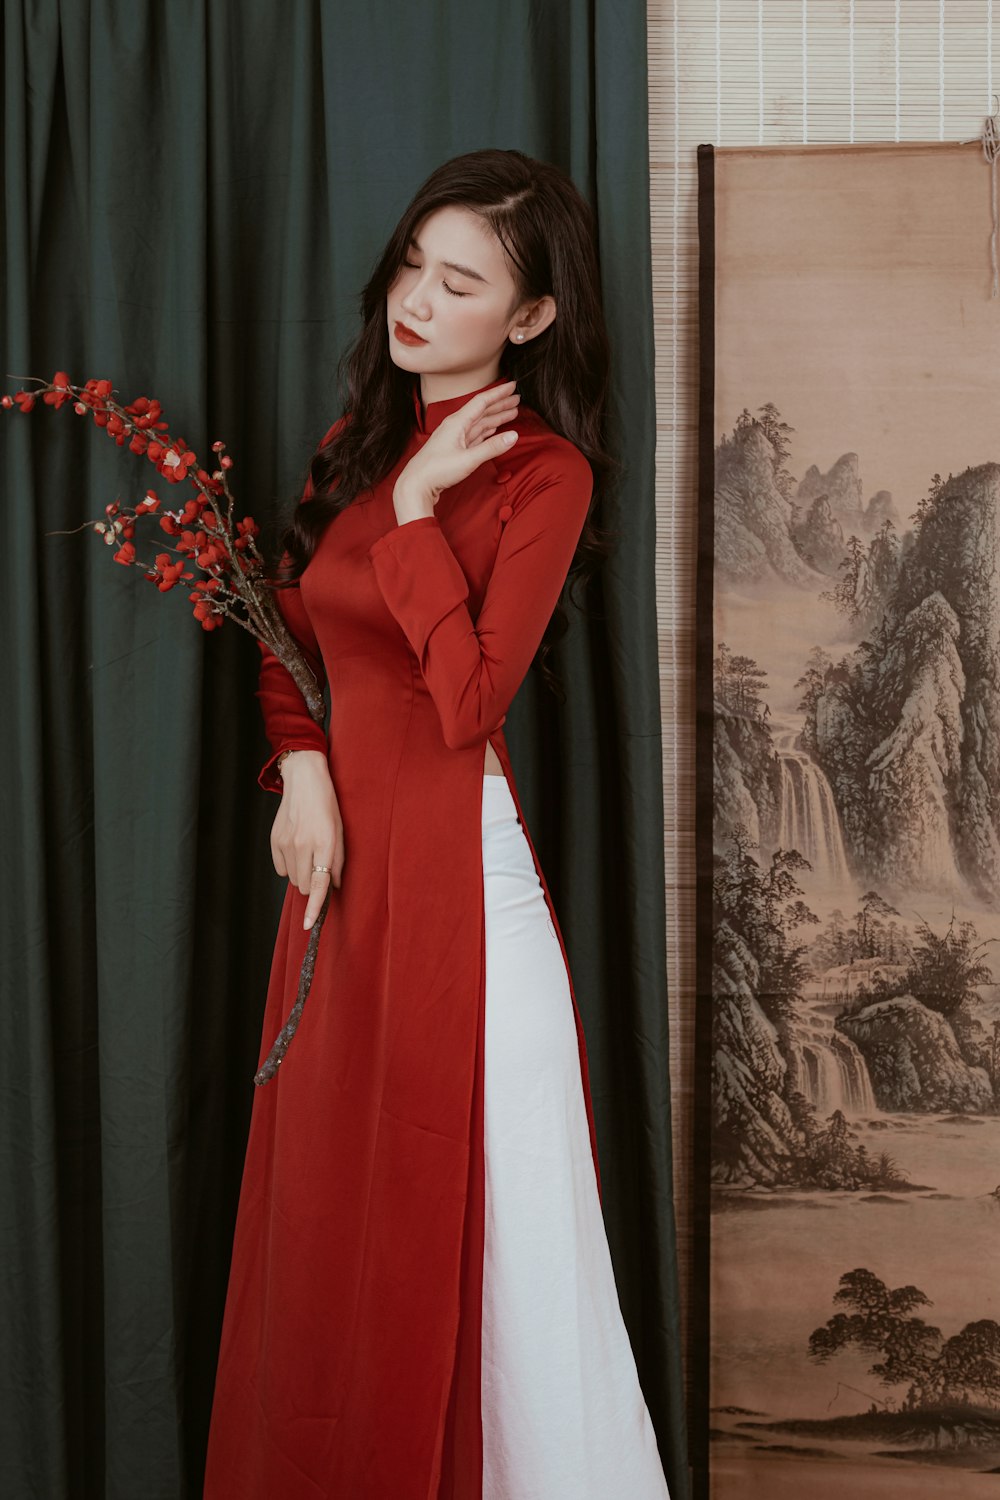 Una donna in un lungo cappotto rosso e vestito bianco